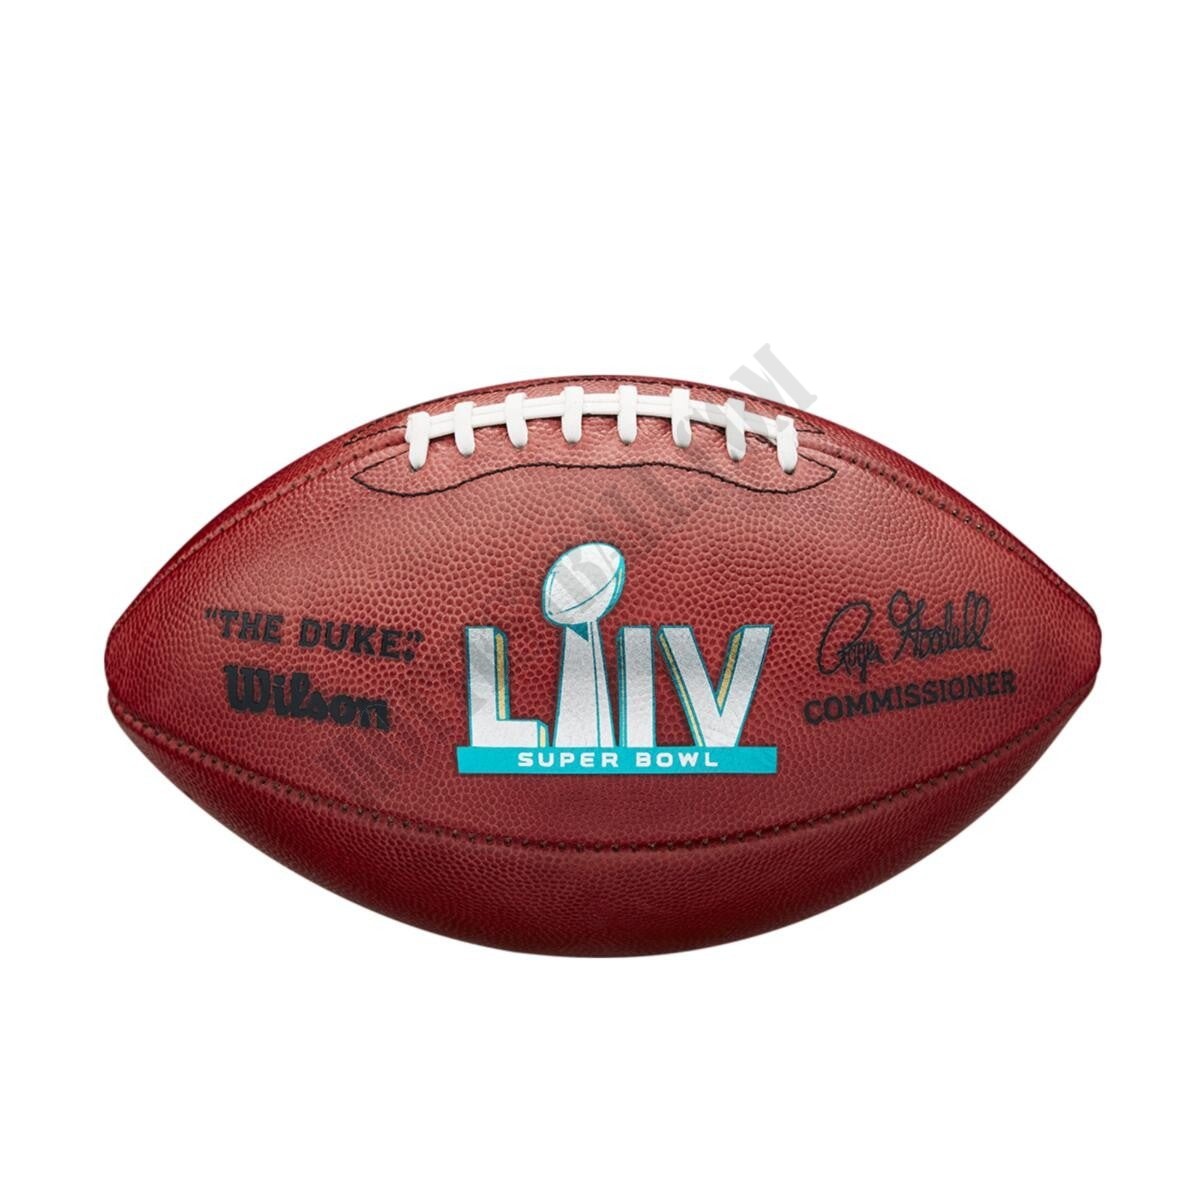 Super Bowl LIV Game Football - Kansas City Chiefs - Wilson Discount Store - Super Bowl LIV Game Football - Kansas City Chiefs - Wilson Discount Store